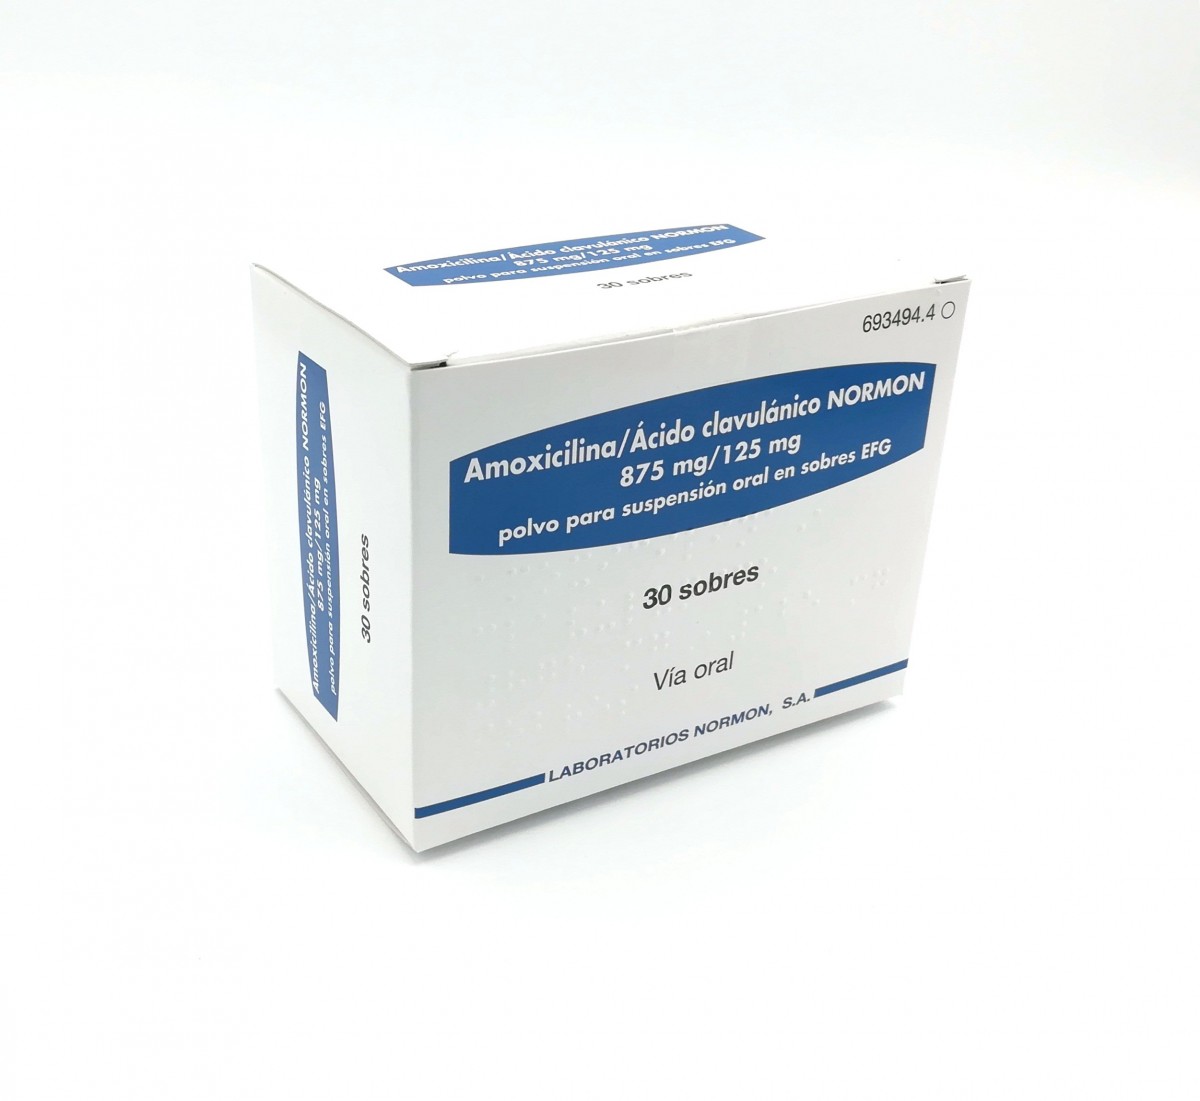 AMOXICILINA/ACIDO CLAVULANICO NORMON 875 mg/125 mg POLVO PARA SUSPENSION ORAL EN SOBRES EFG , 20 sobres fotografía del envase.